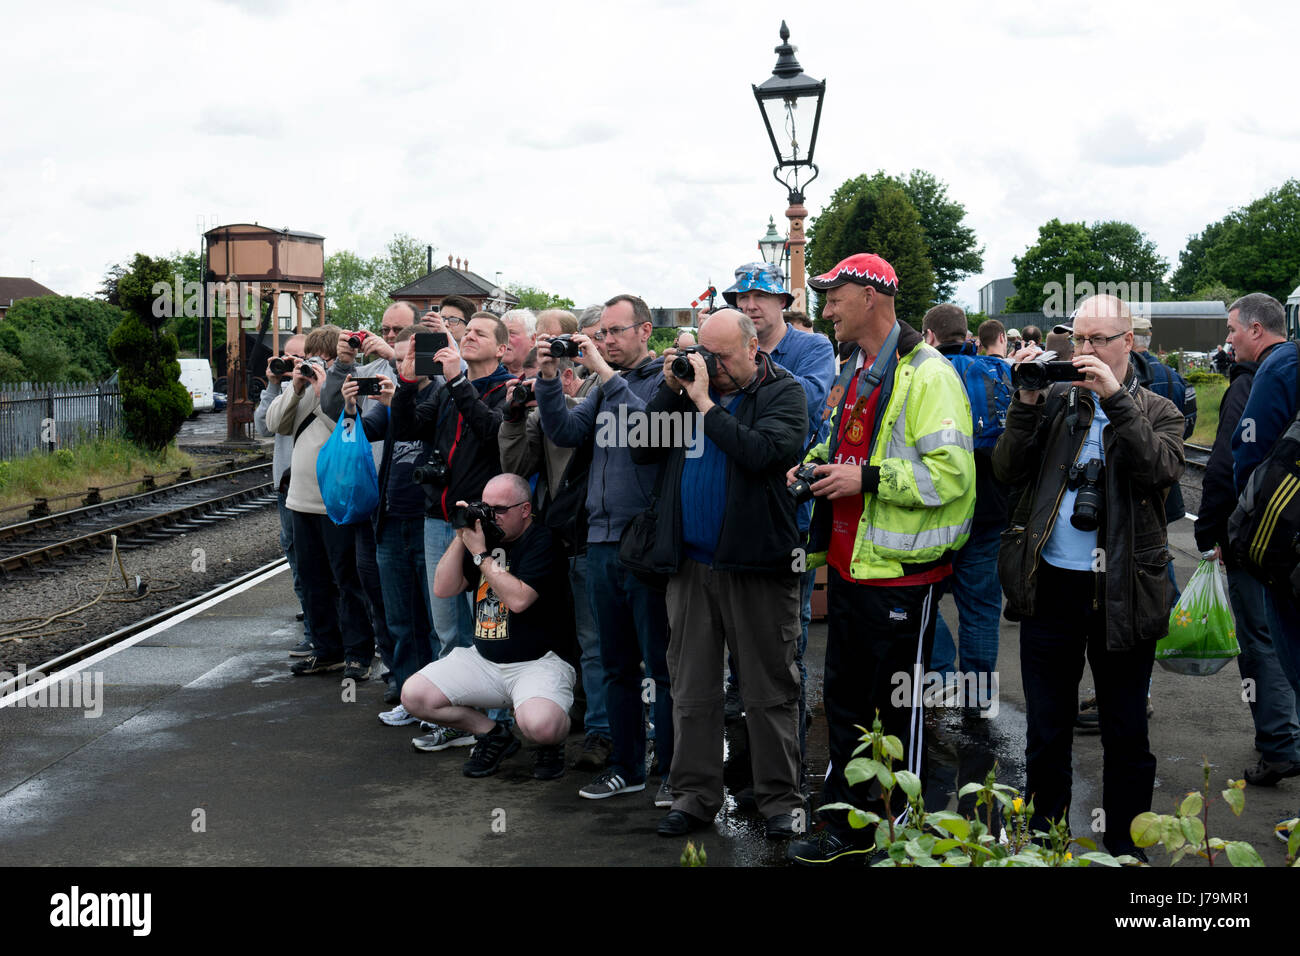 Gli appassionati di rampa di scattare fotografie a molla Festival Diesel a Severn Valley Railway, stazione a Kidderminster, Regno Unito Foto Stock